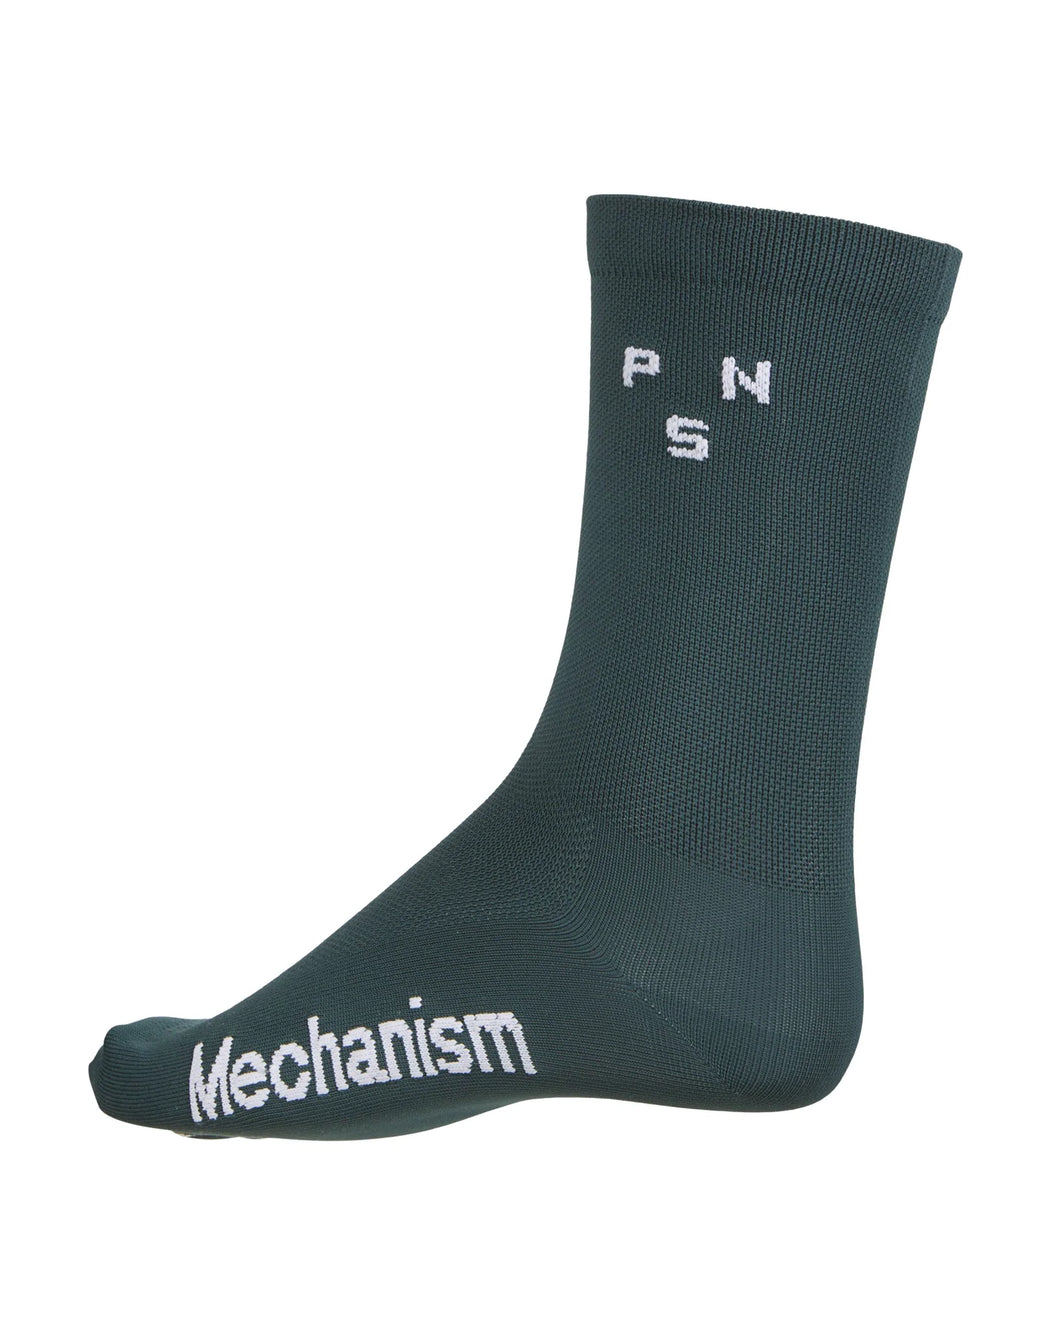 Mechanism Socks (Teal)